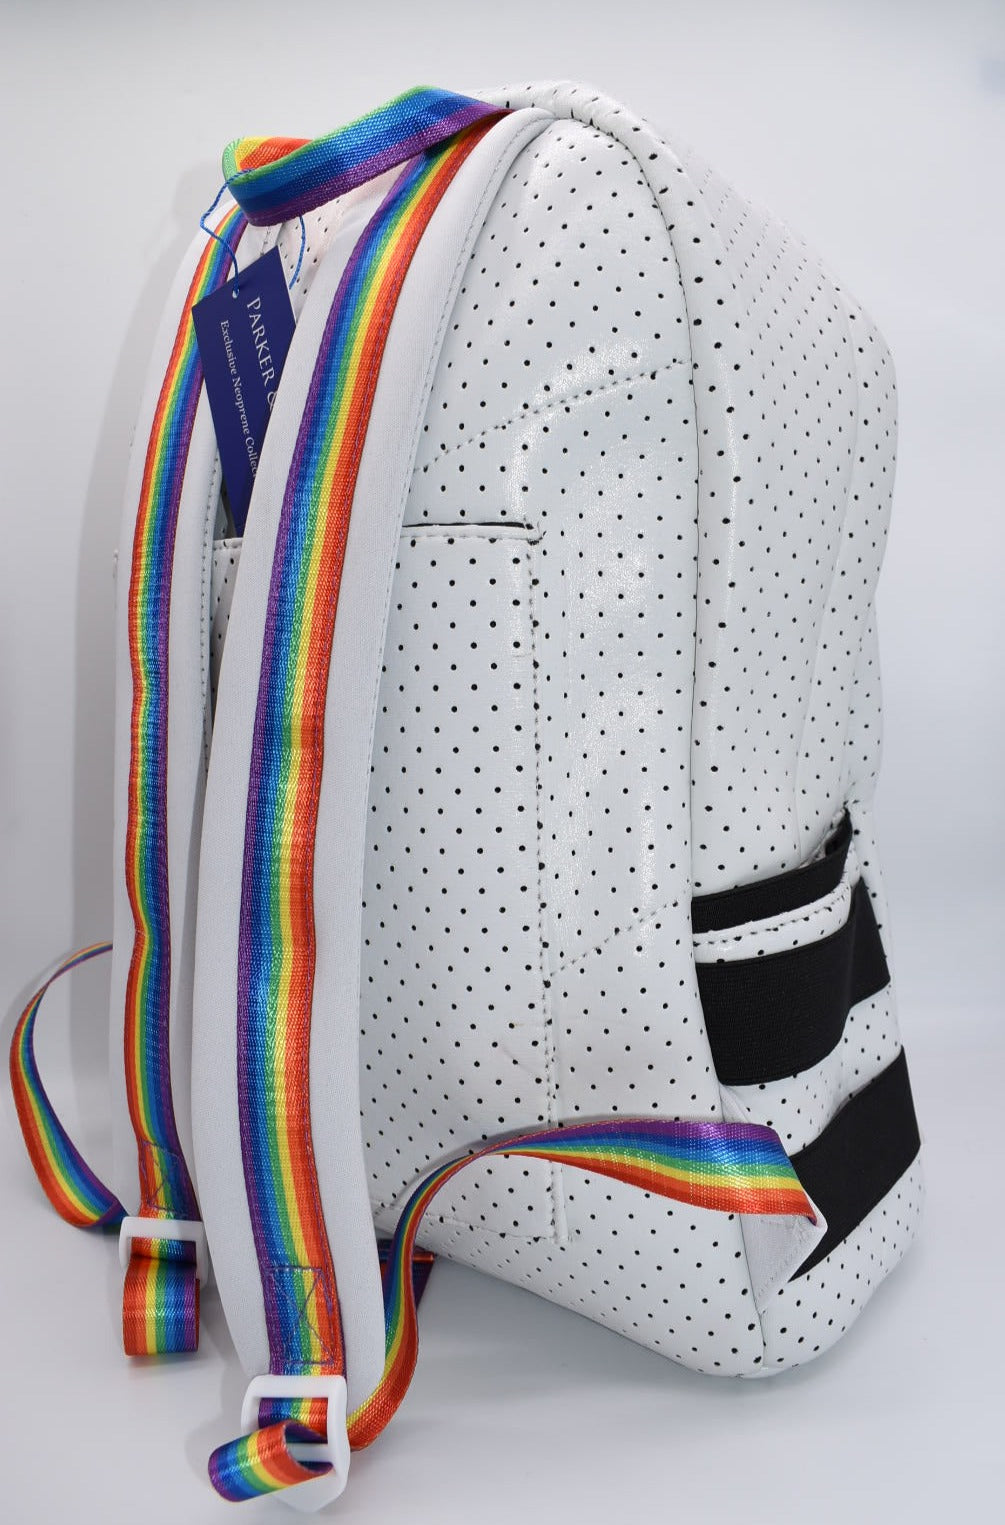 Parker & Hyde Large White Rainbow Neoprene Backpack